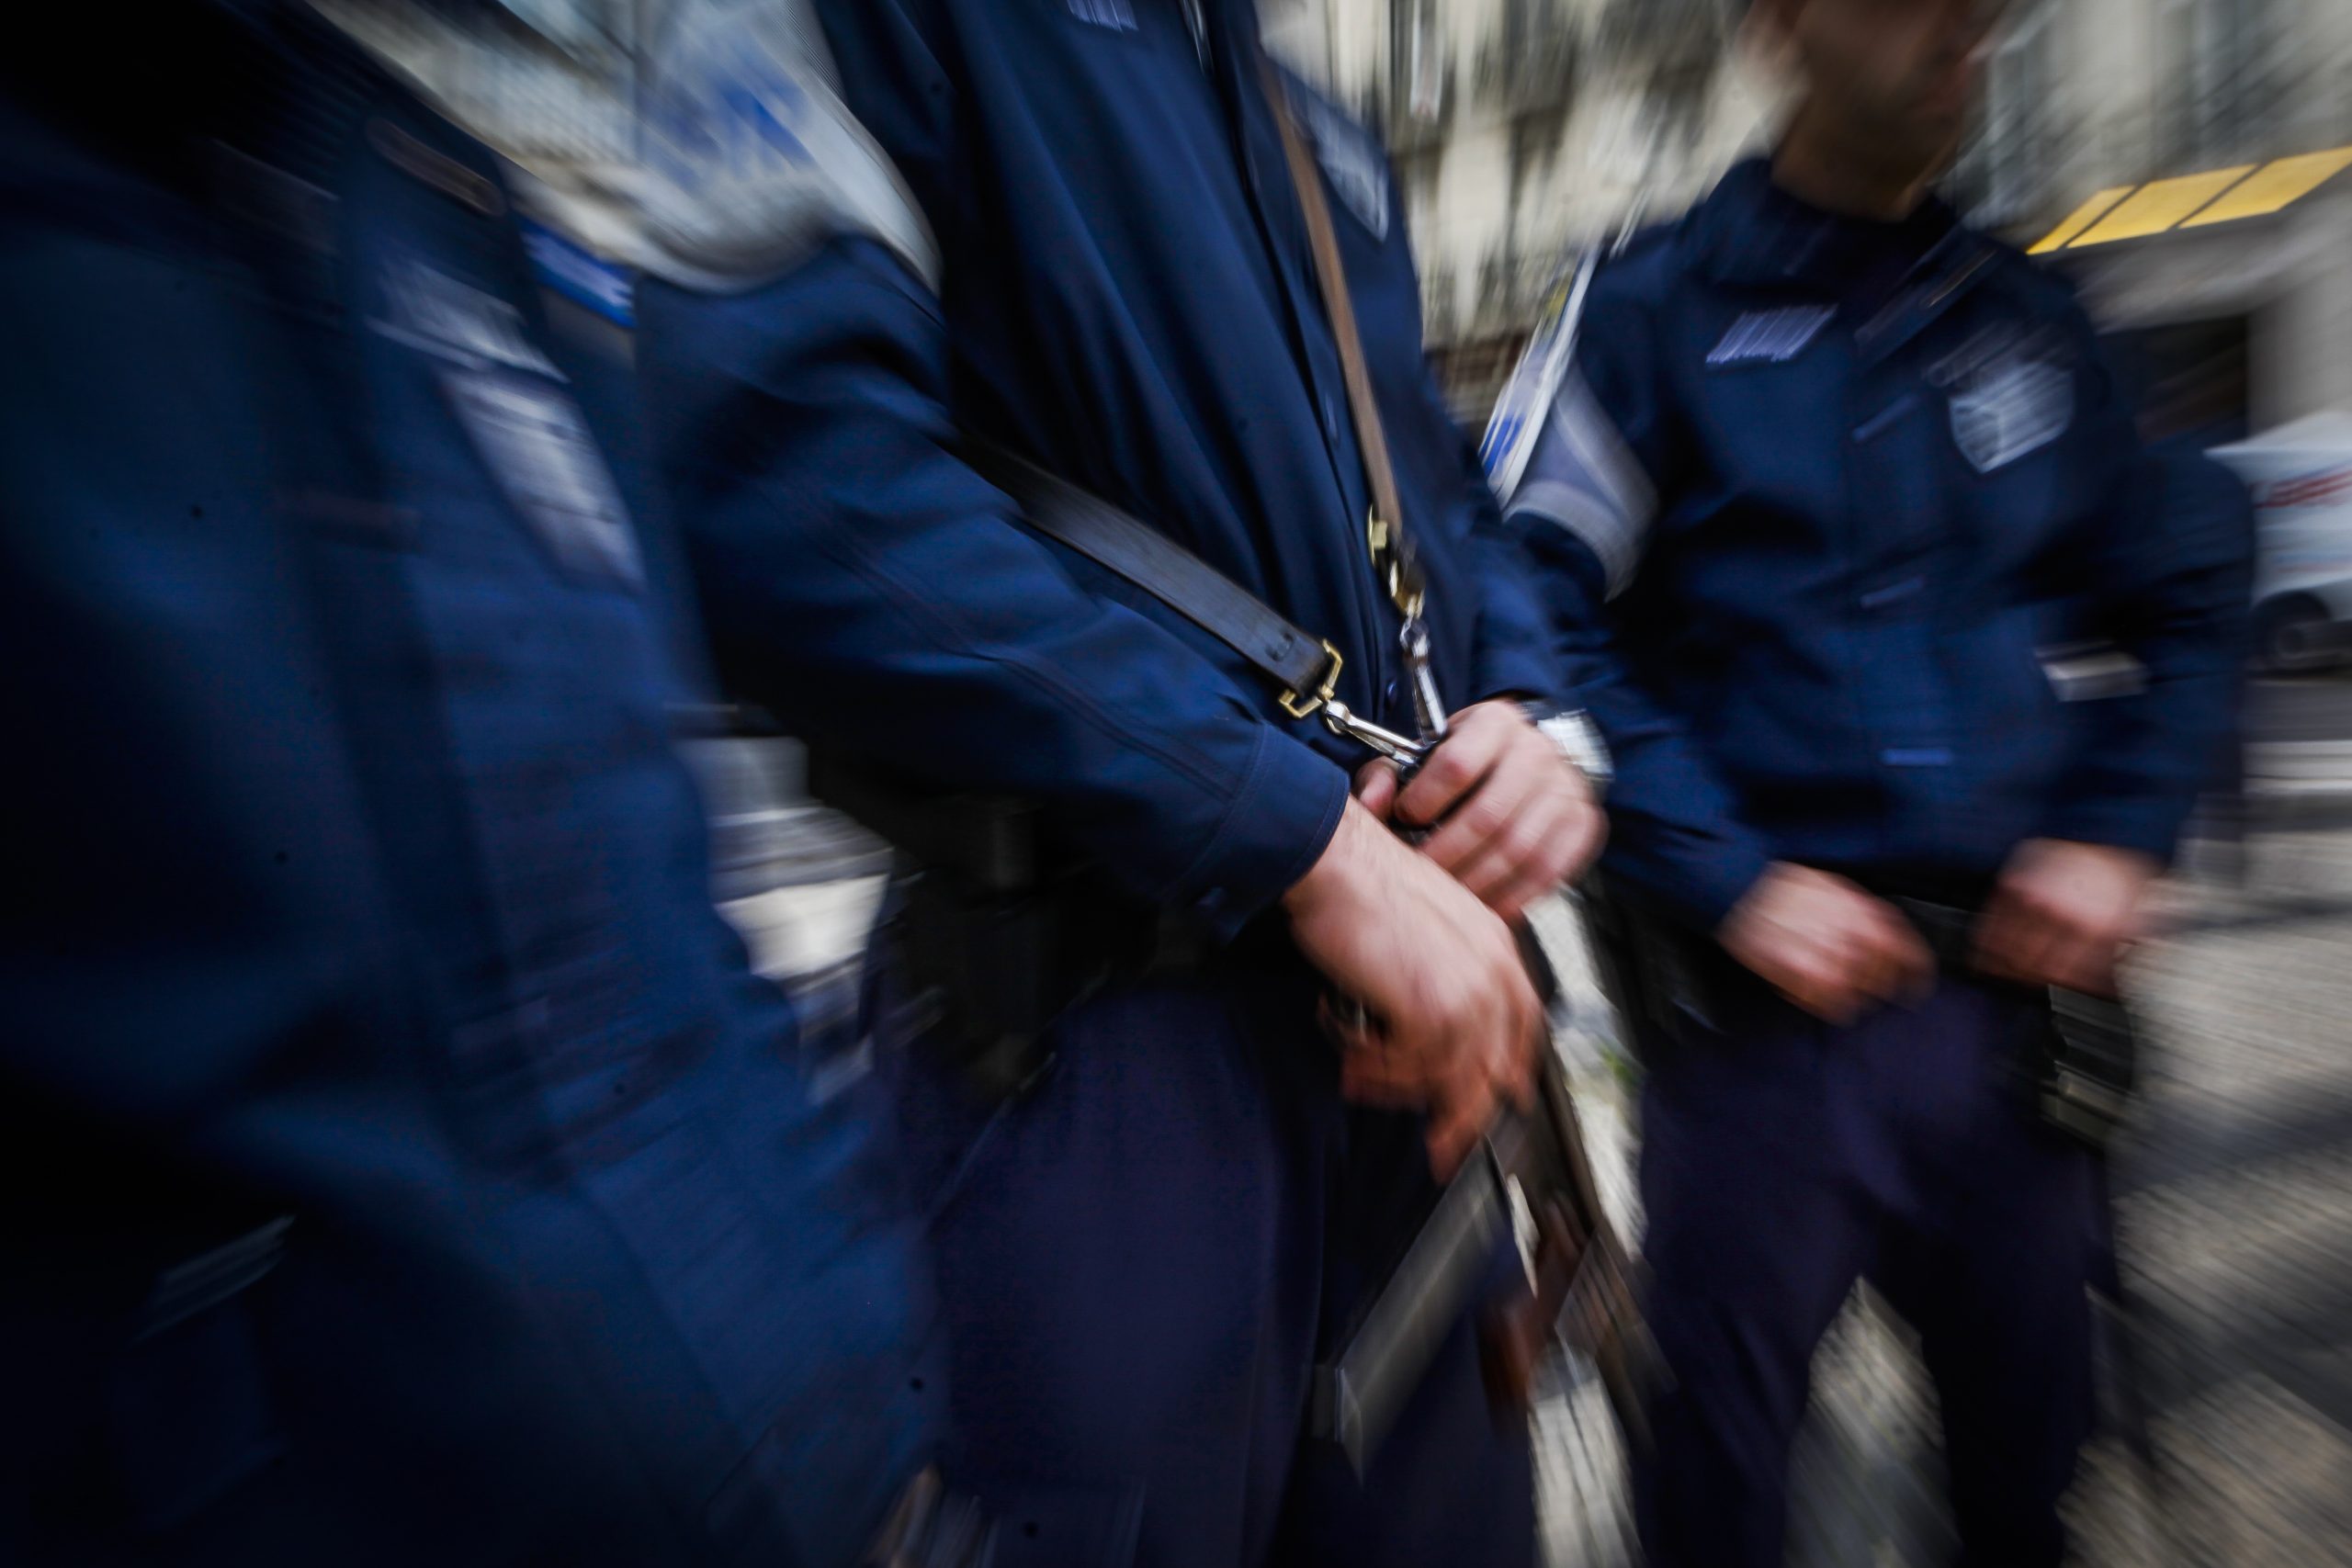 Cinco detidos em operação da PSP contra tráfico de droga em Leiria e Marinha Grande